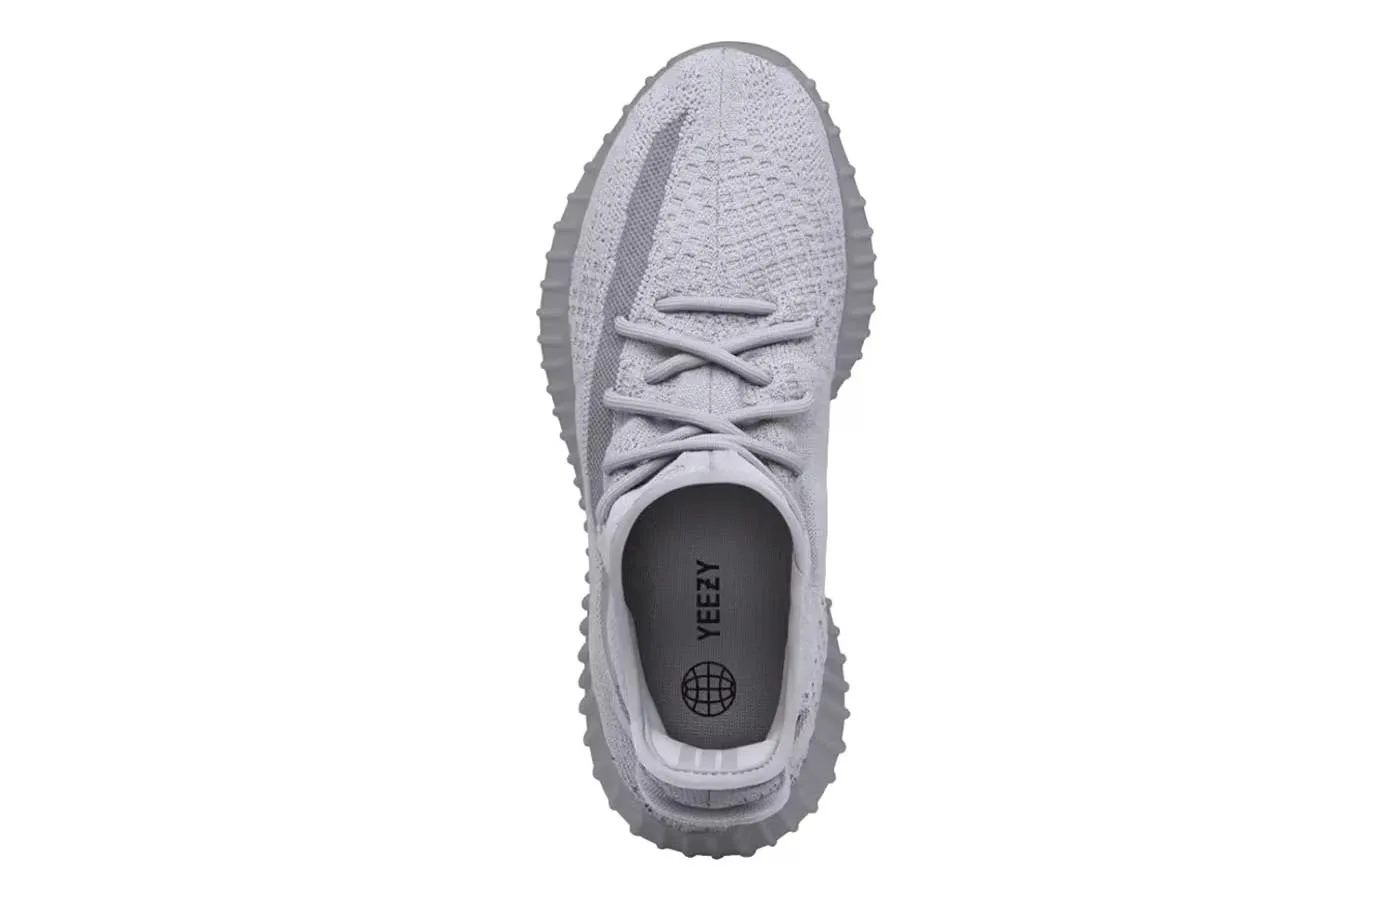 Kanye Revealed That Adidas Sells “Fake Shoes”